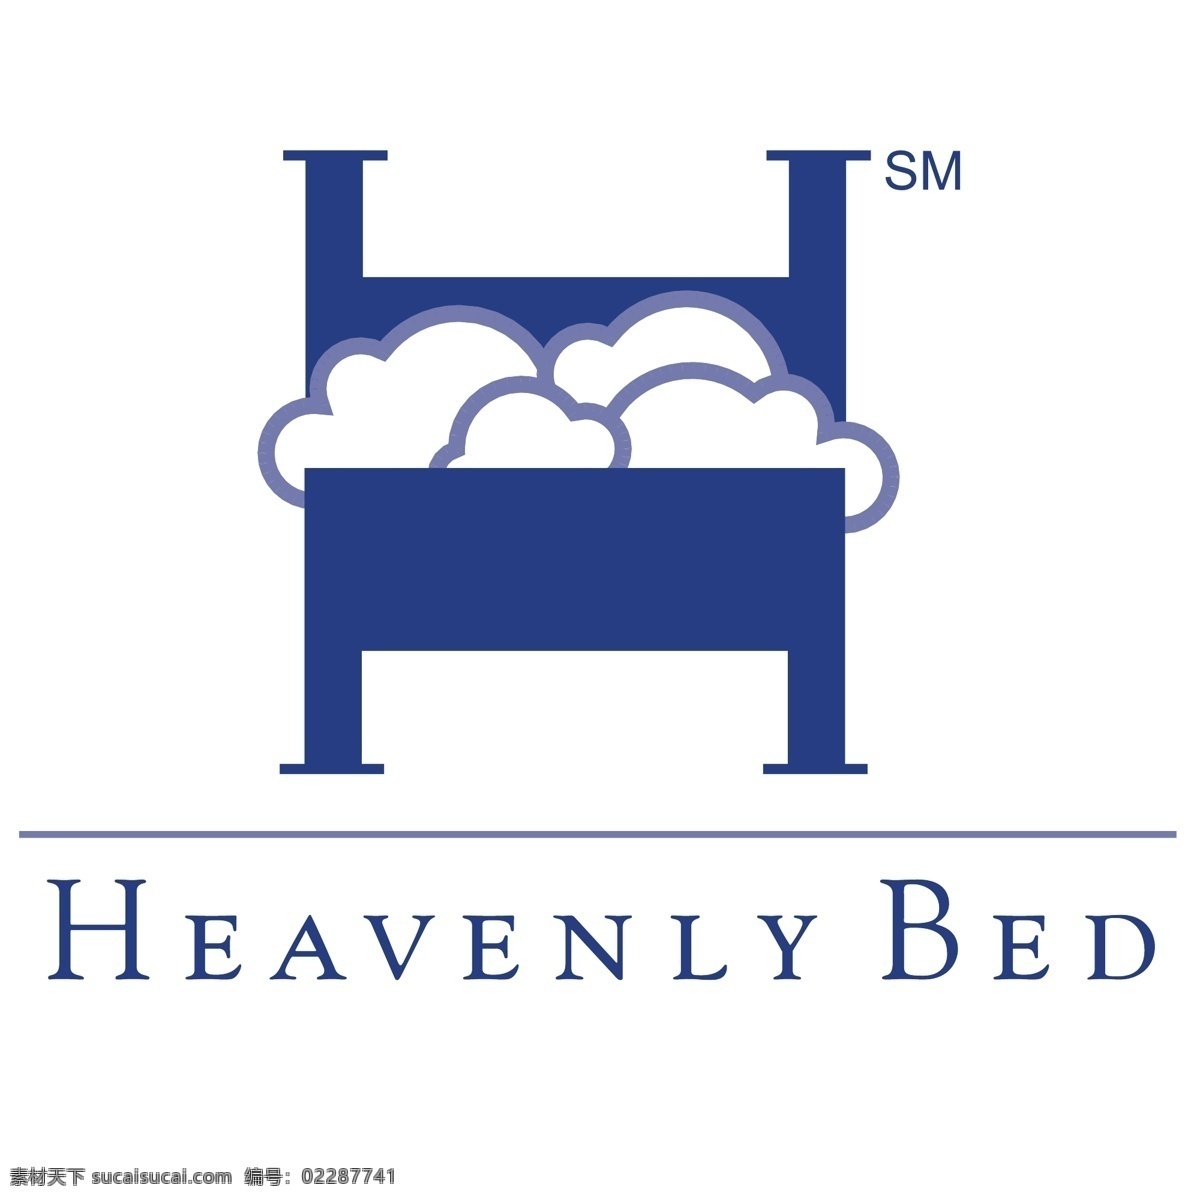 天上的床 床 天堂 天国的床 床上 免费 矢量 矢量图像的床 床的艺术载体 在床上 床的矢量 床上图片 艺术 图像 床载体自由 自由的载体 躺在床上 载体 建筑家居